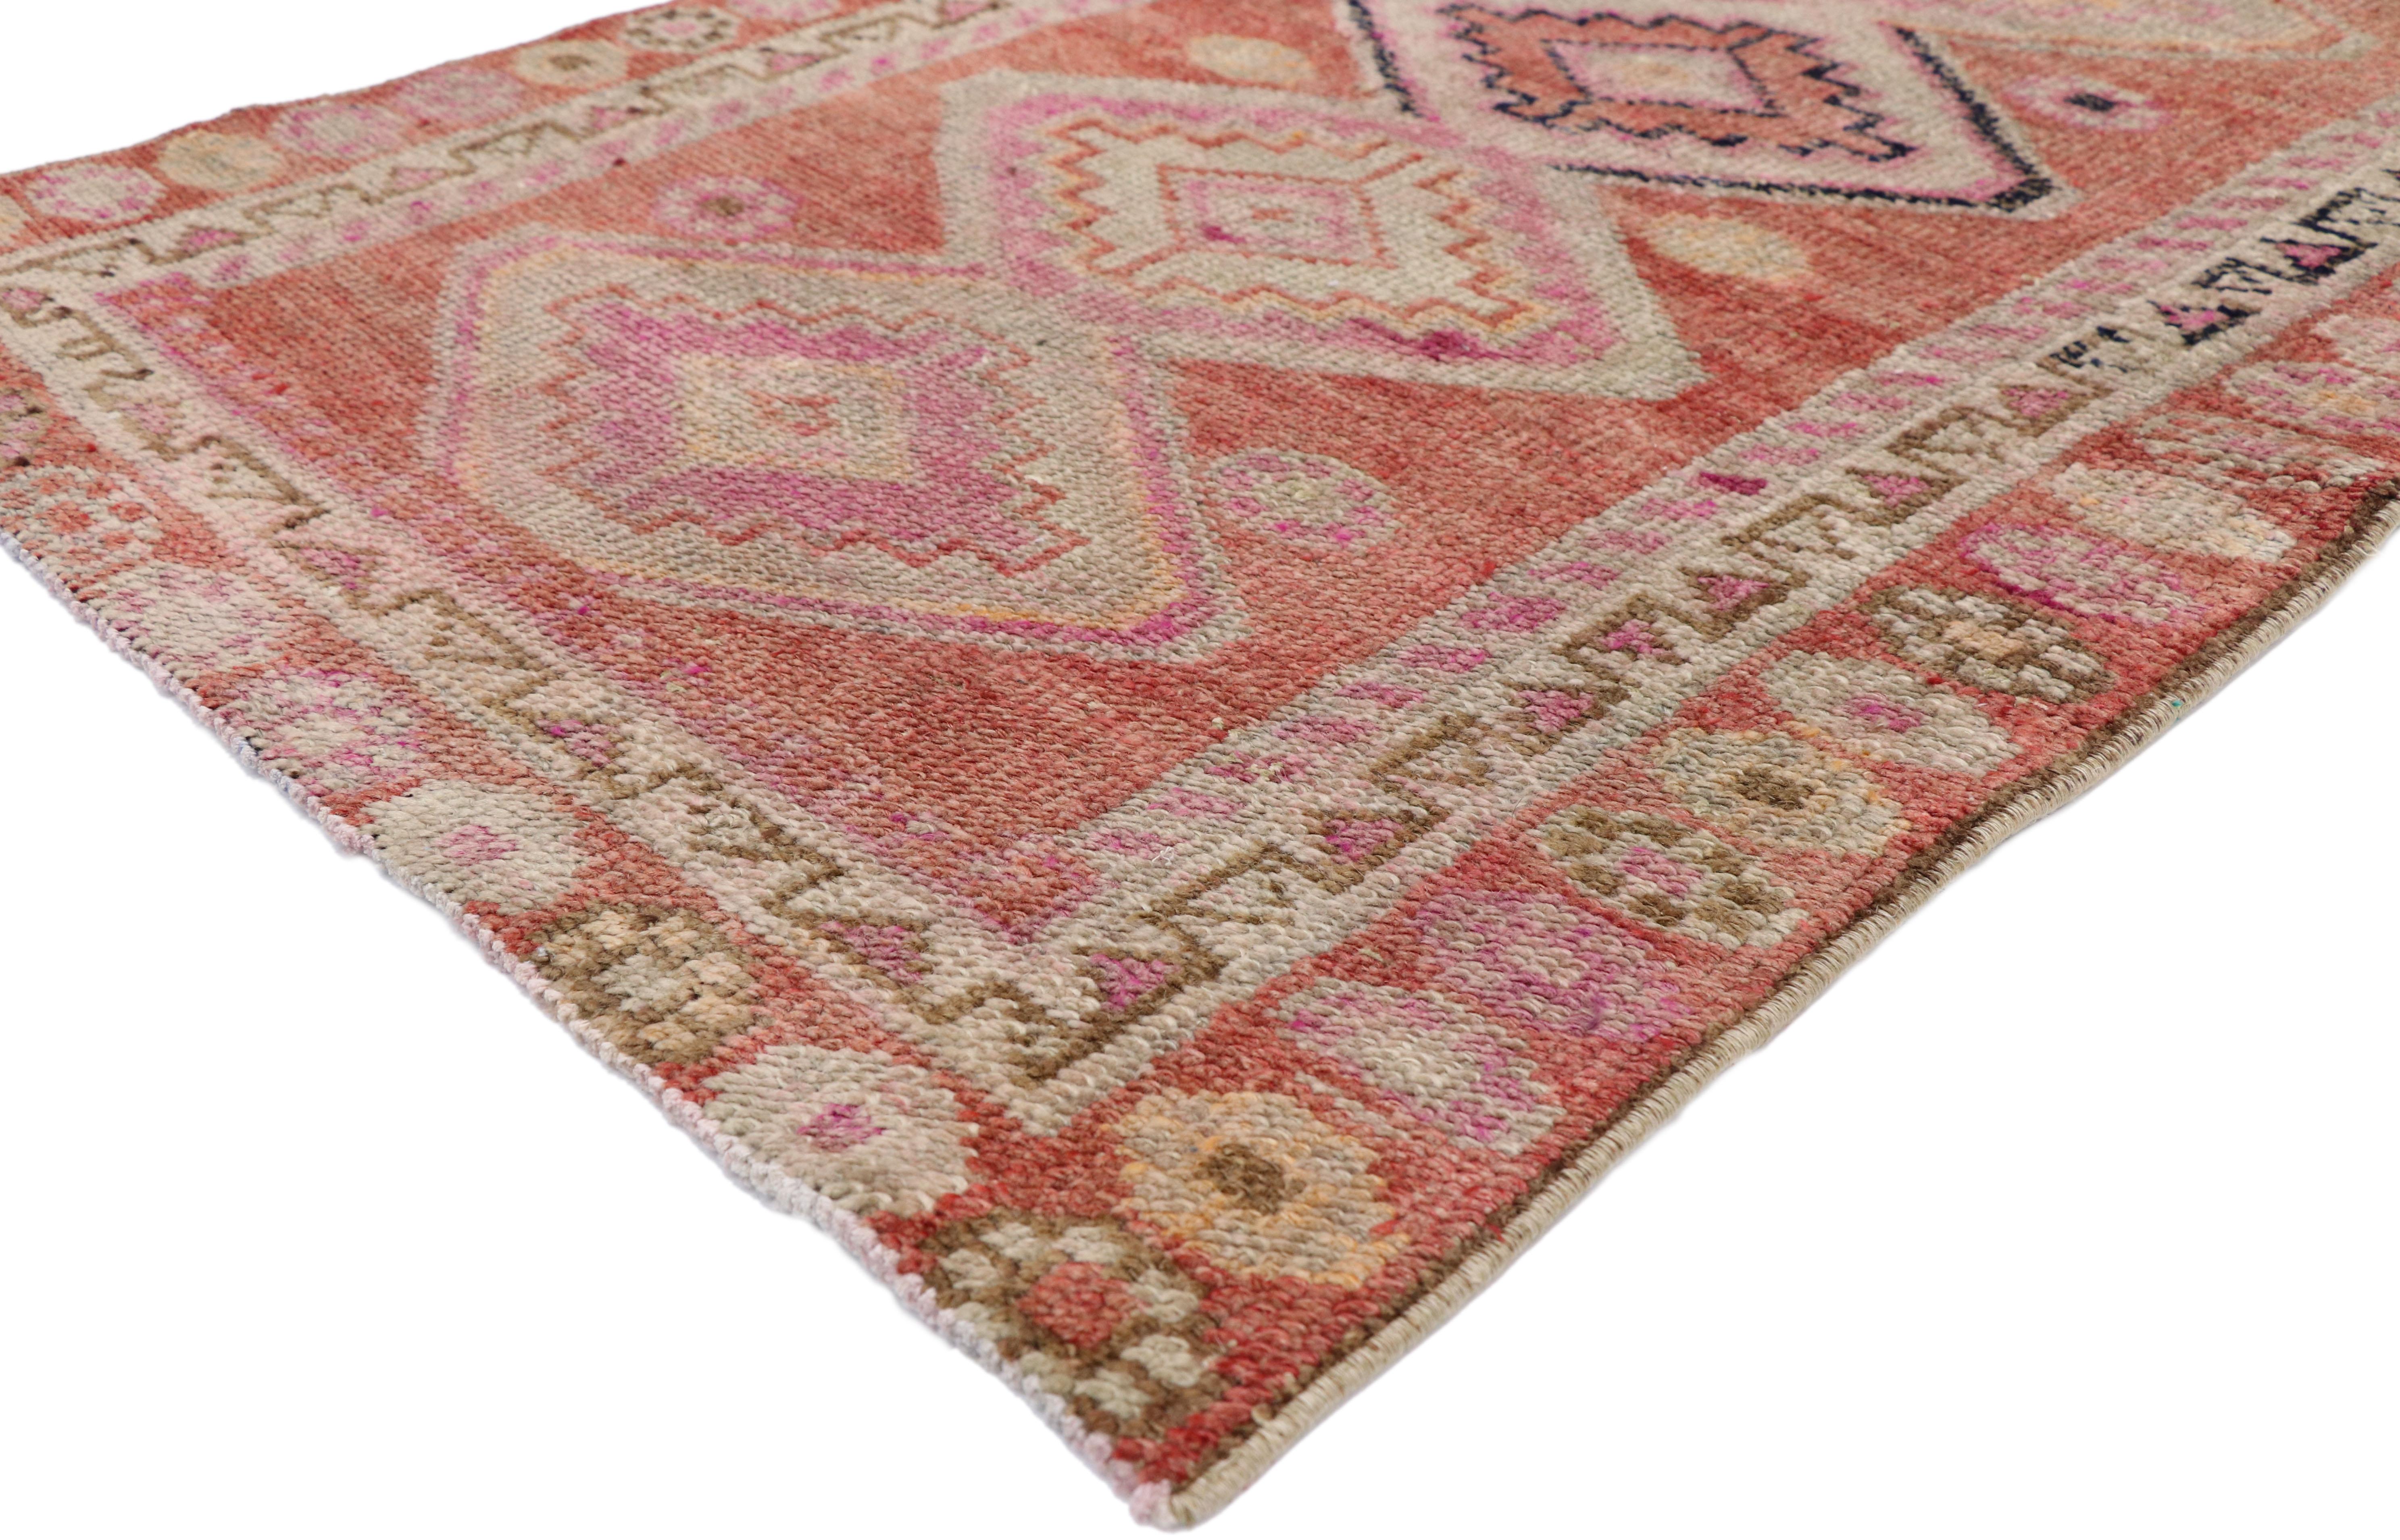 52665 Tapis Vintage Turc Oushak Runner, 03'00 x 12'00. Les tapis turcs Oushak sont des tapis étroits, noués à la main, originaires de la région d'Oushak en Turquie. Ils se caractérisent par des motifs complexes, des palettes de couleurs sereines et